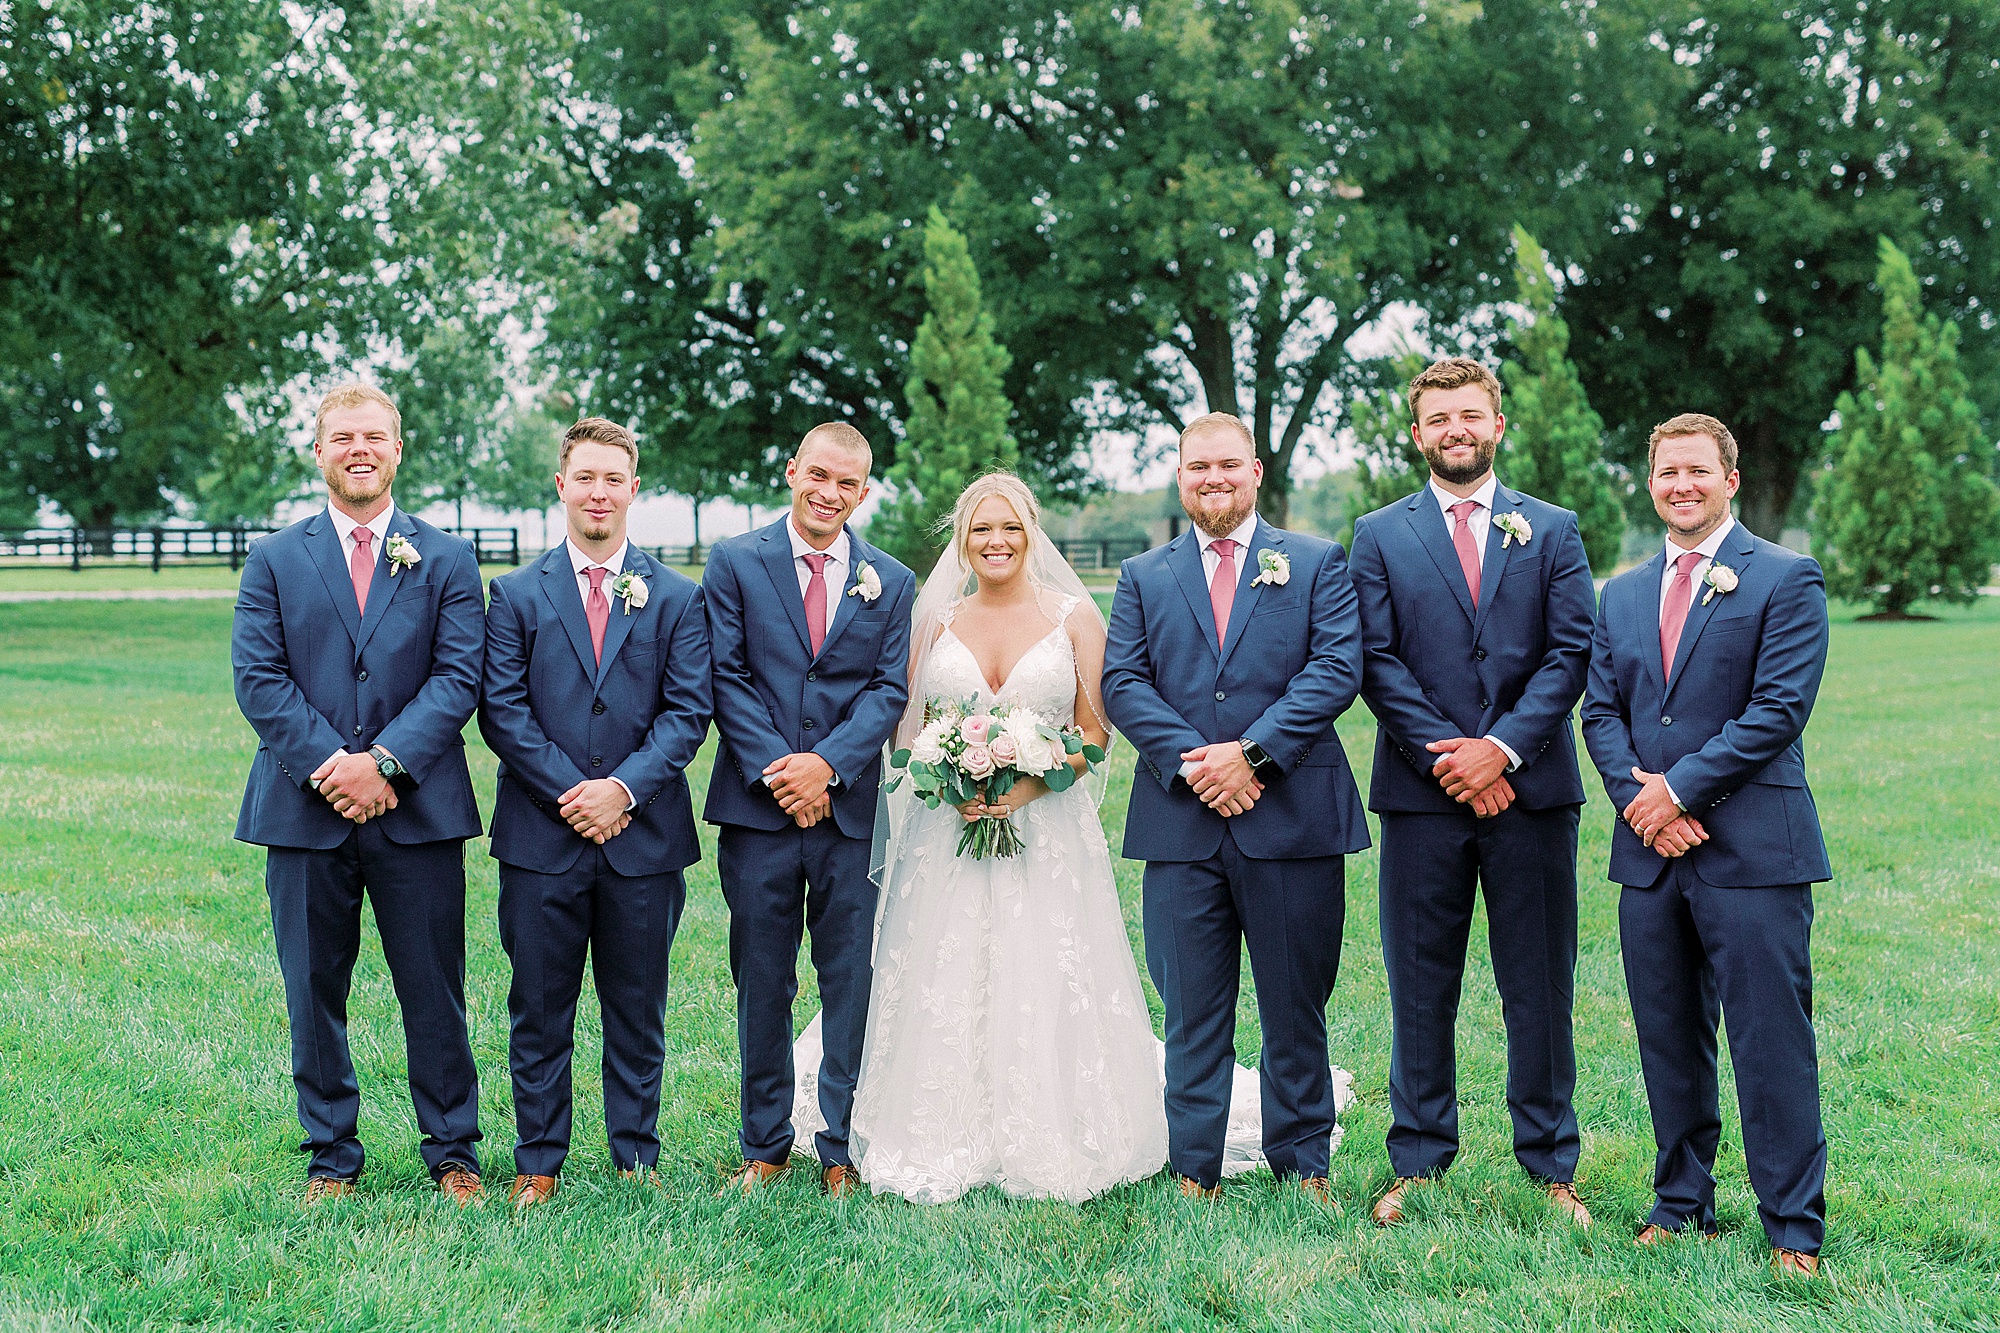 bride stands with groomsmen in navy suits